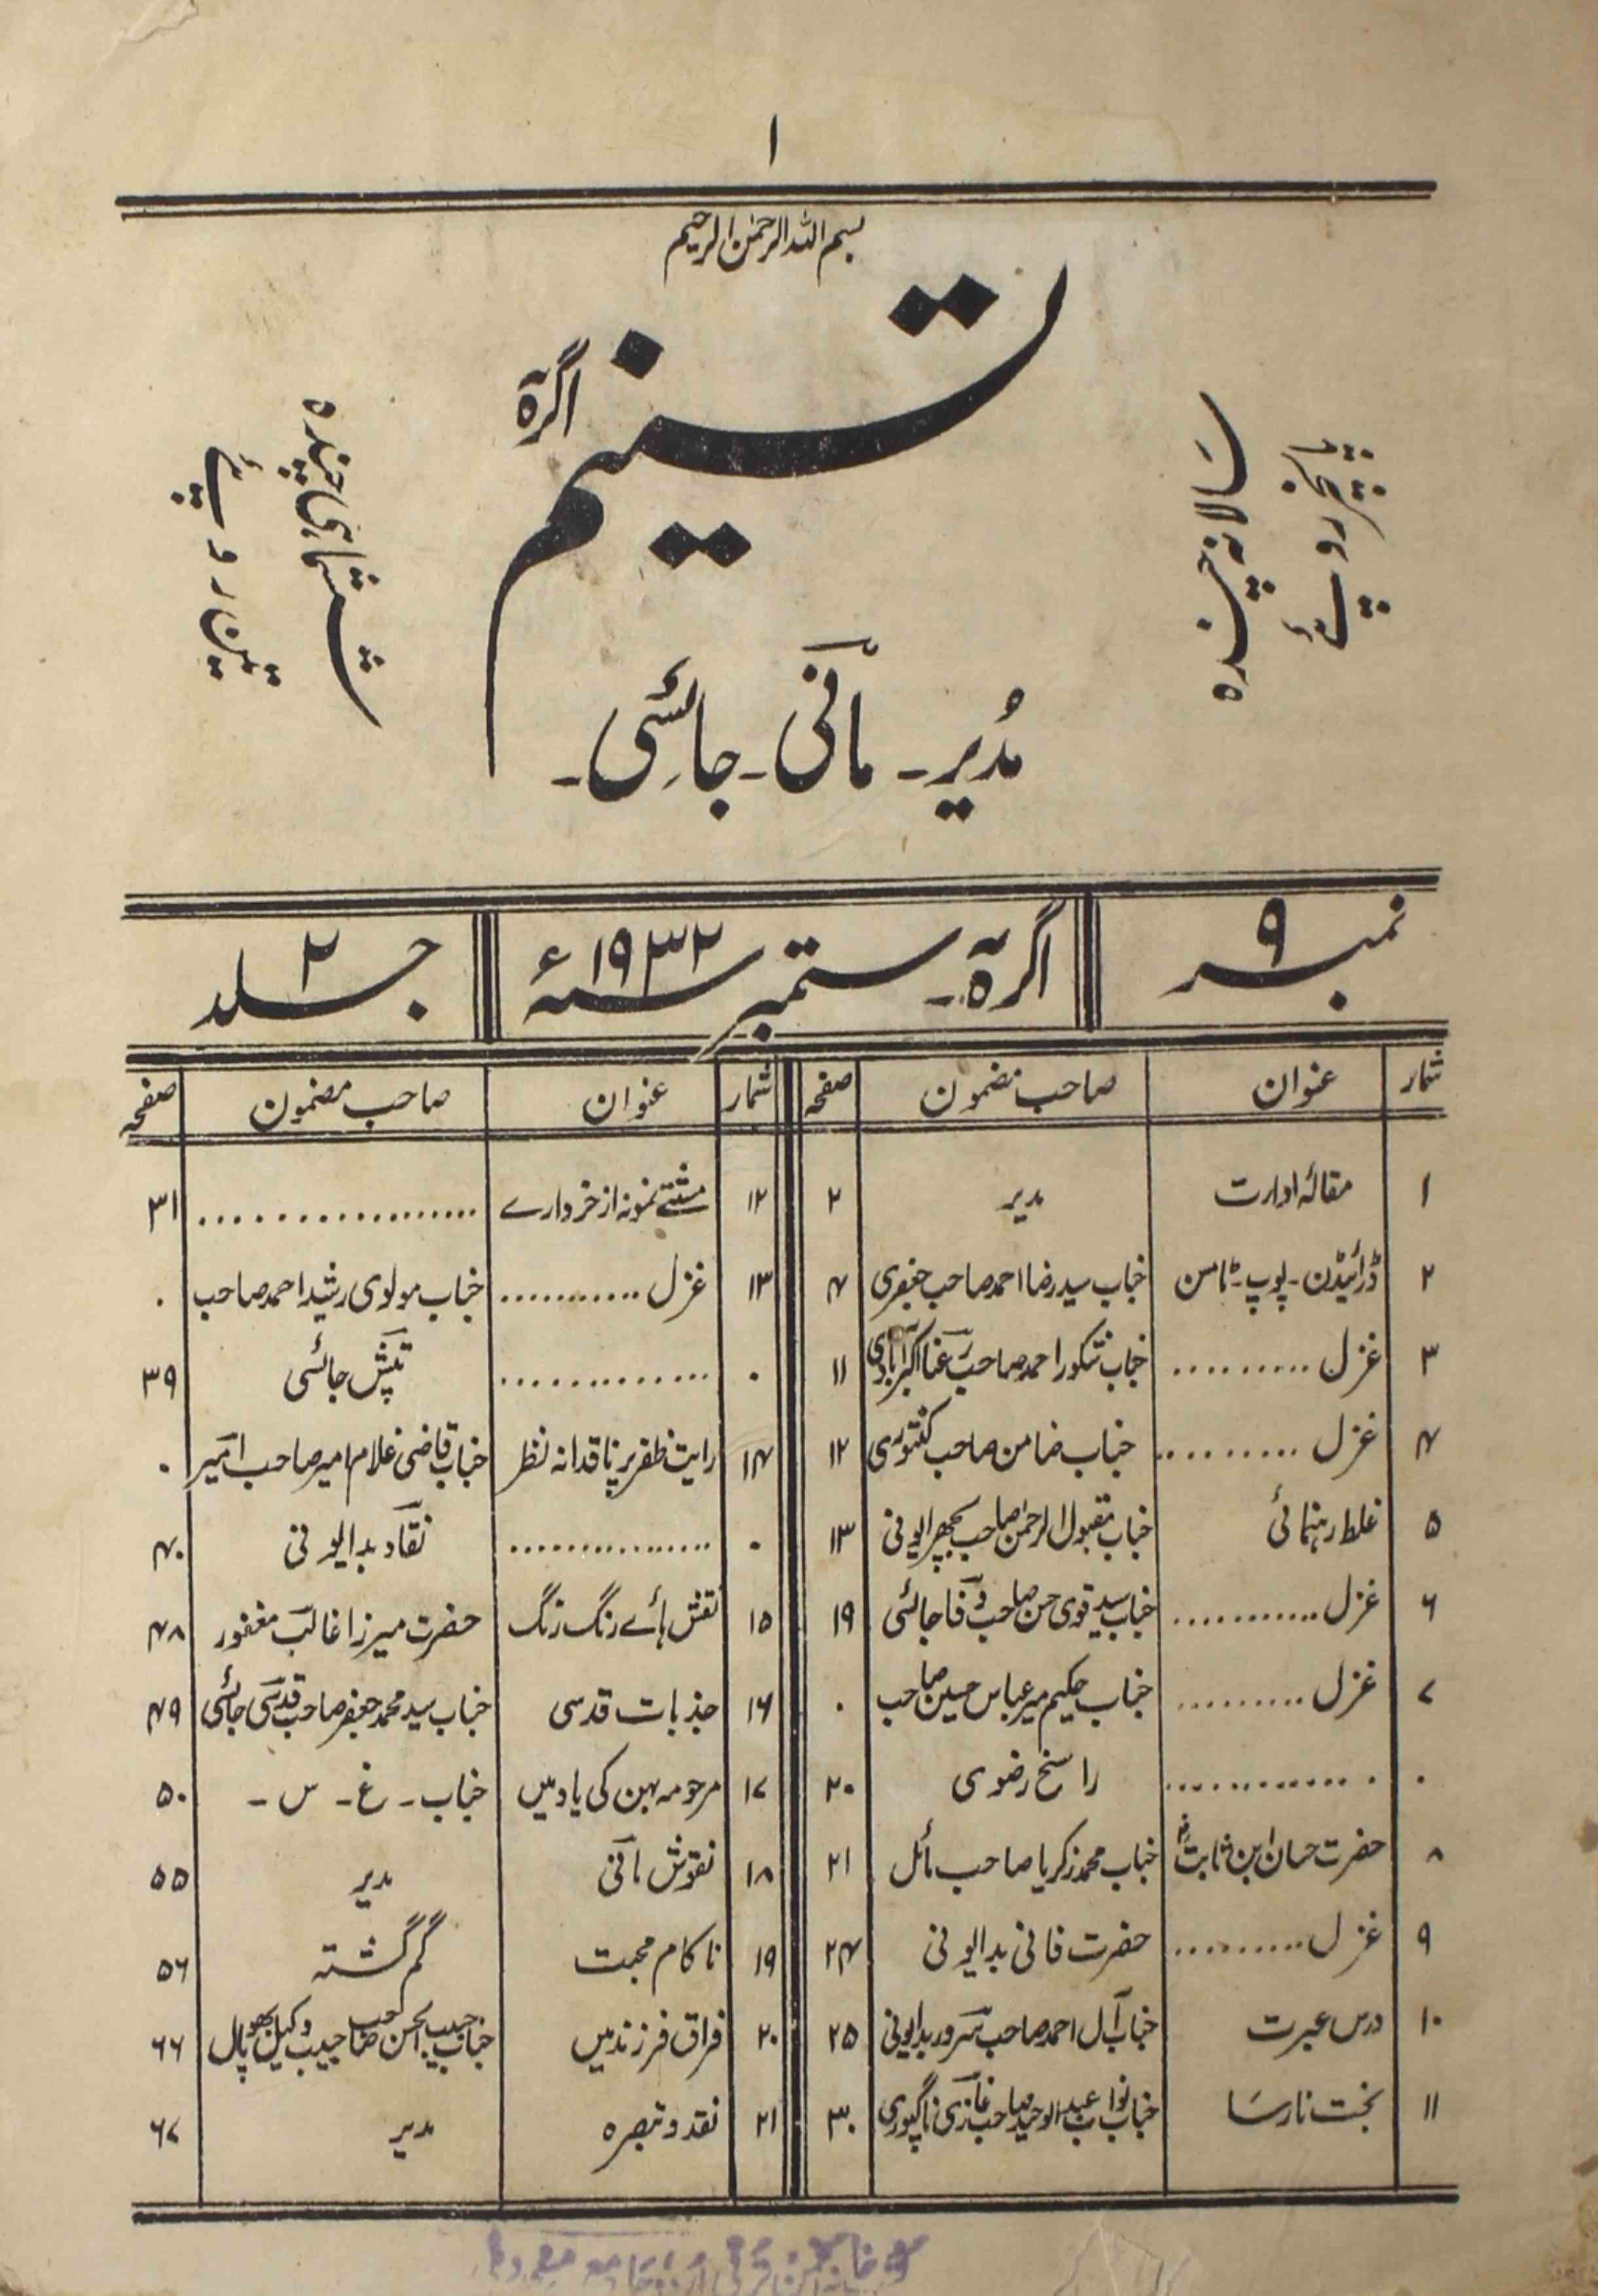 tasneem-shumaara-number-009-mani-jayasi-magazines